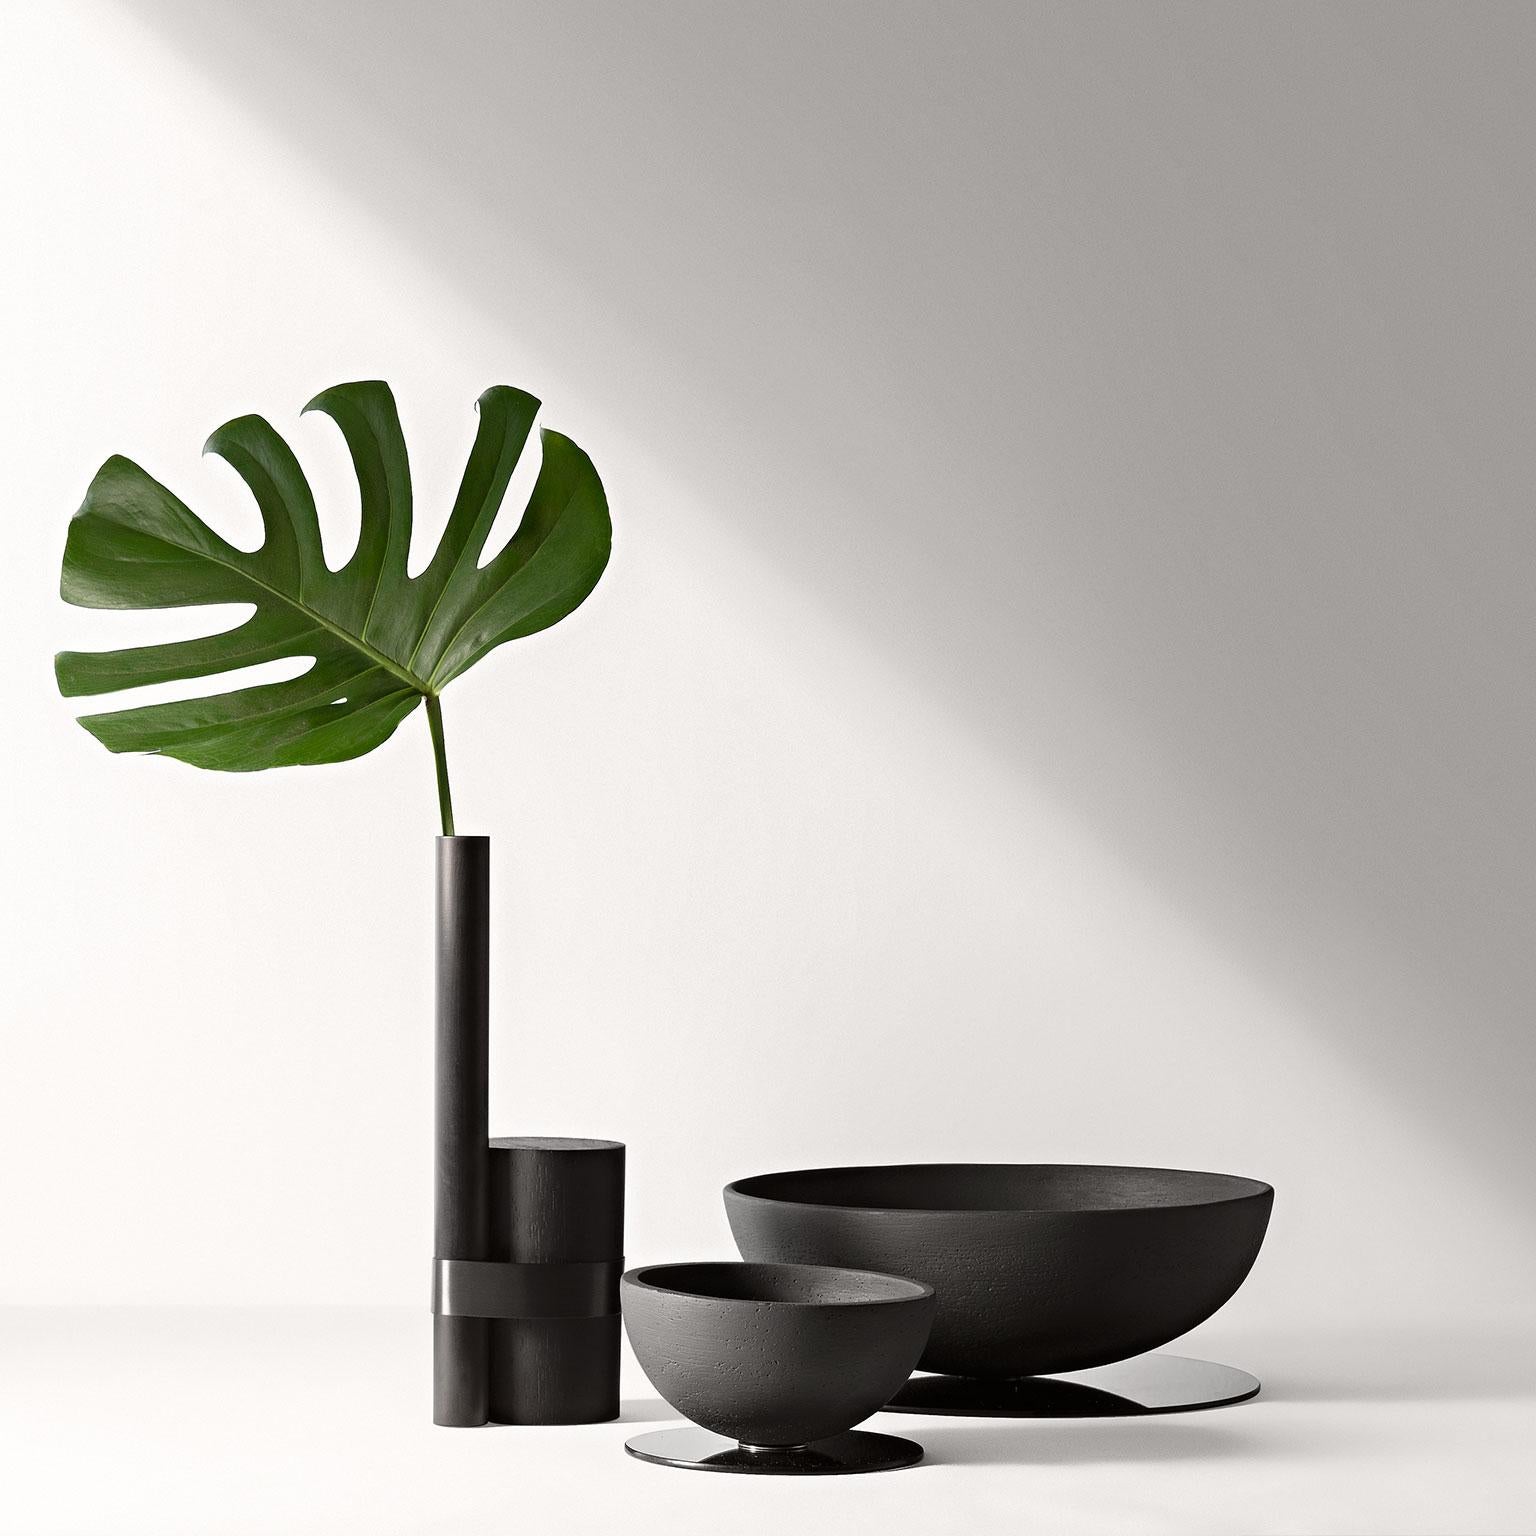 Post-Tropical Vase in Black by Wentz, Brazilian Contemporary Design In New Condition For Sale In Caxias do Sul, Rio Grande do Sul